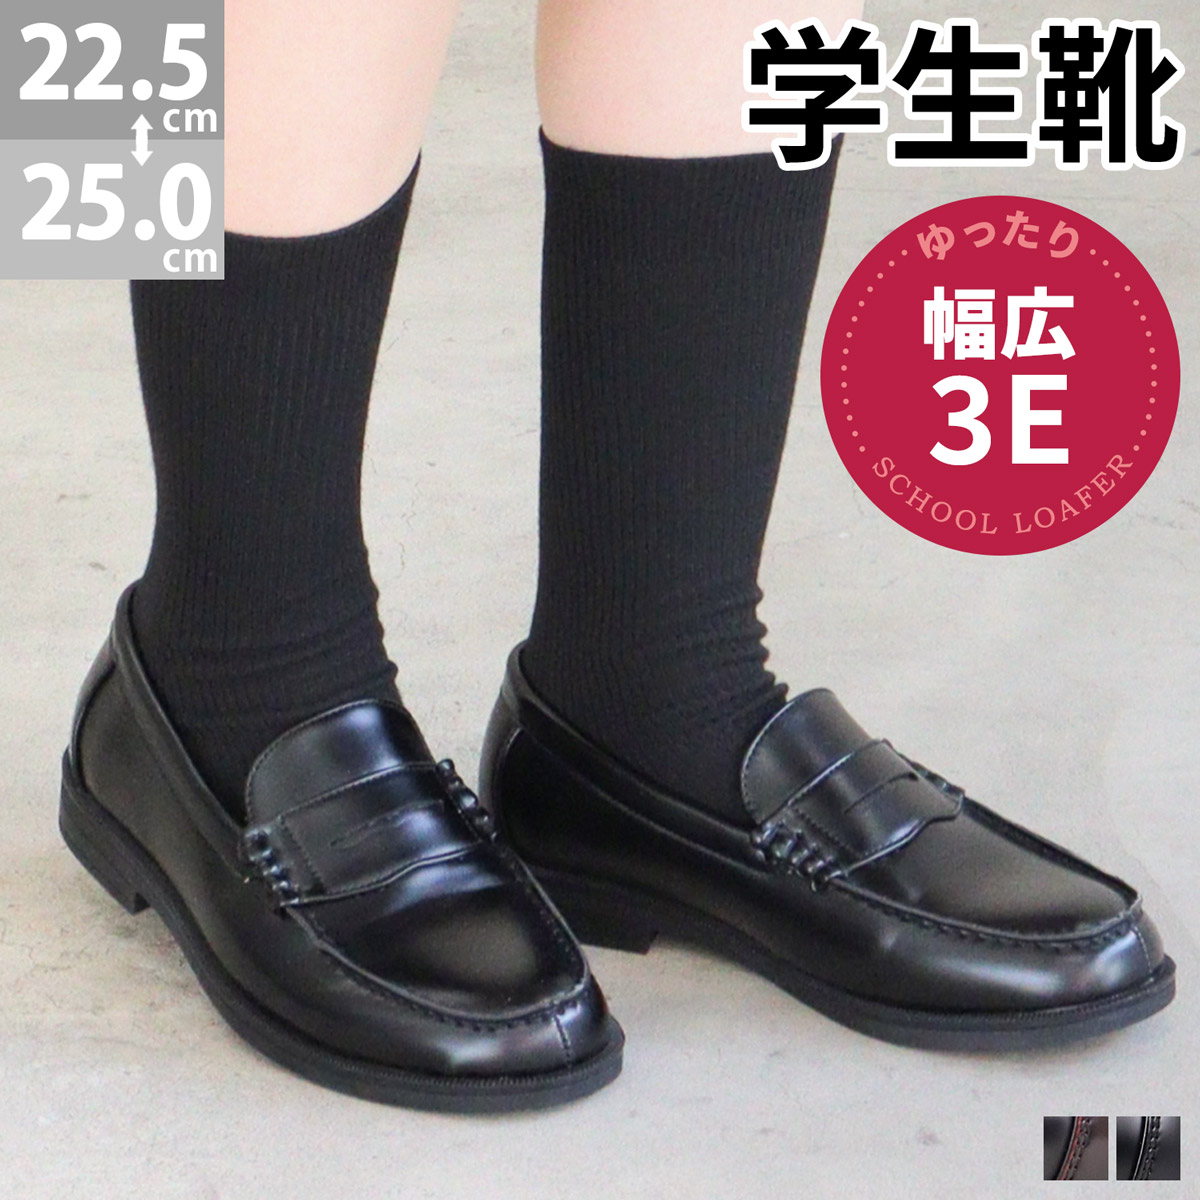 ローファー 学生 女子 スクール 革靴 コイン 黒 男子 22.5-25cm No 